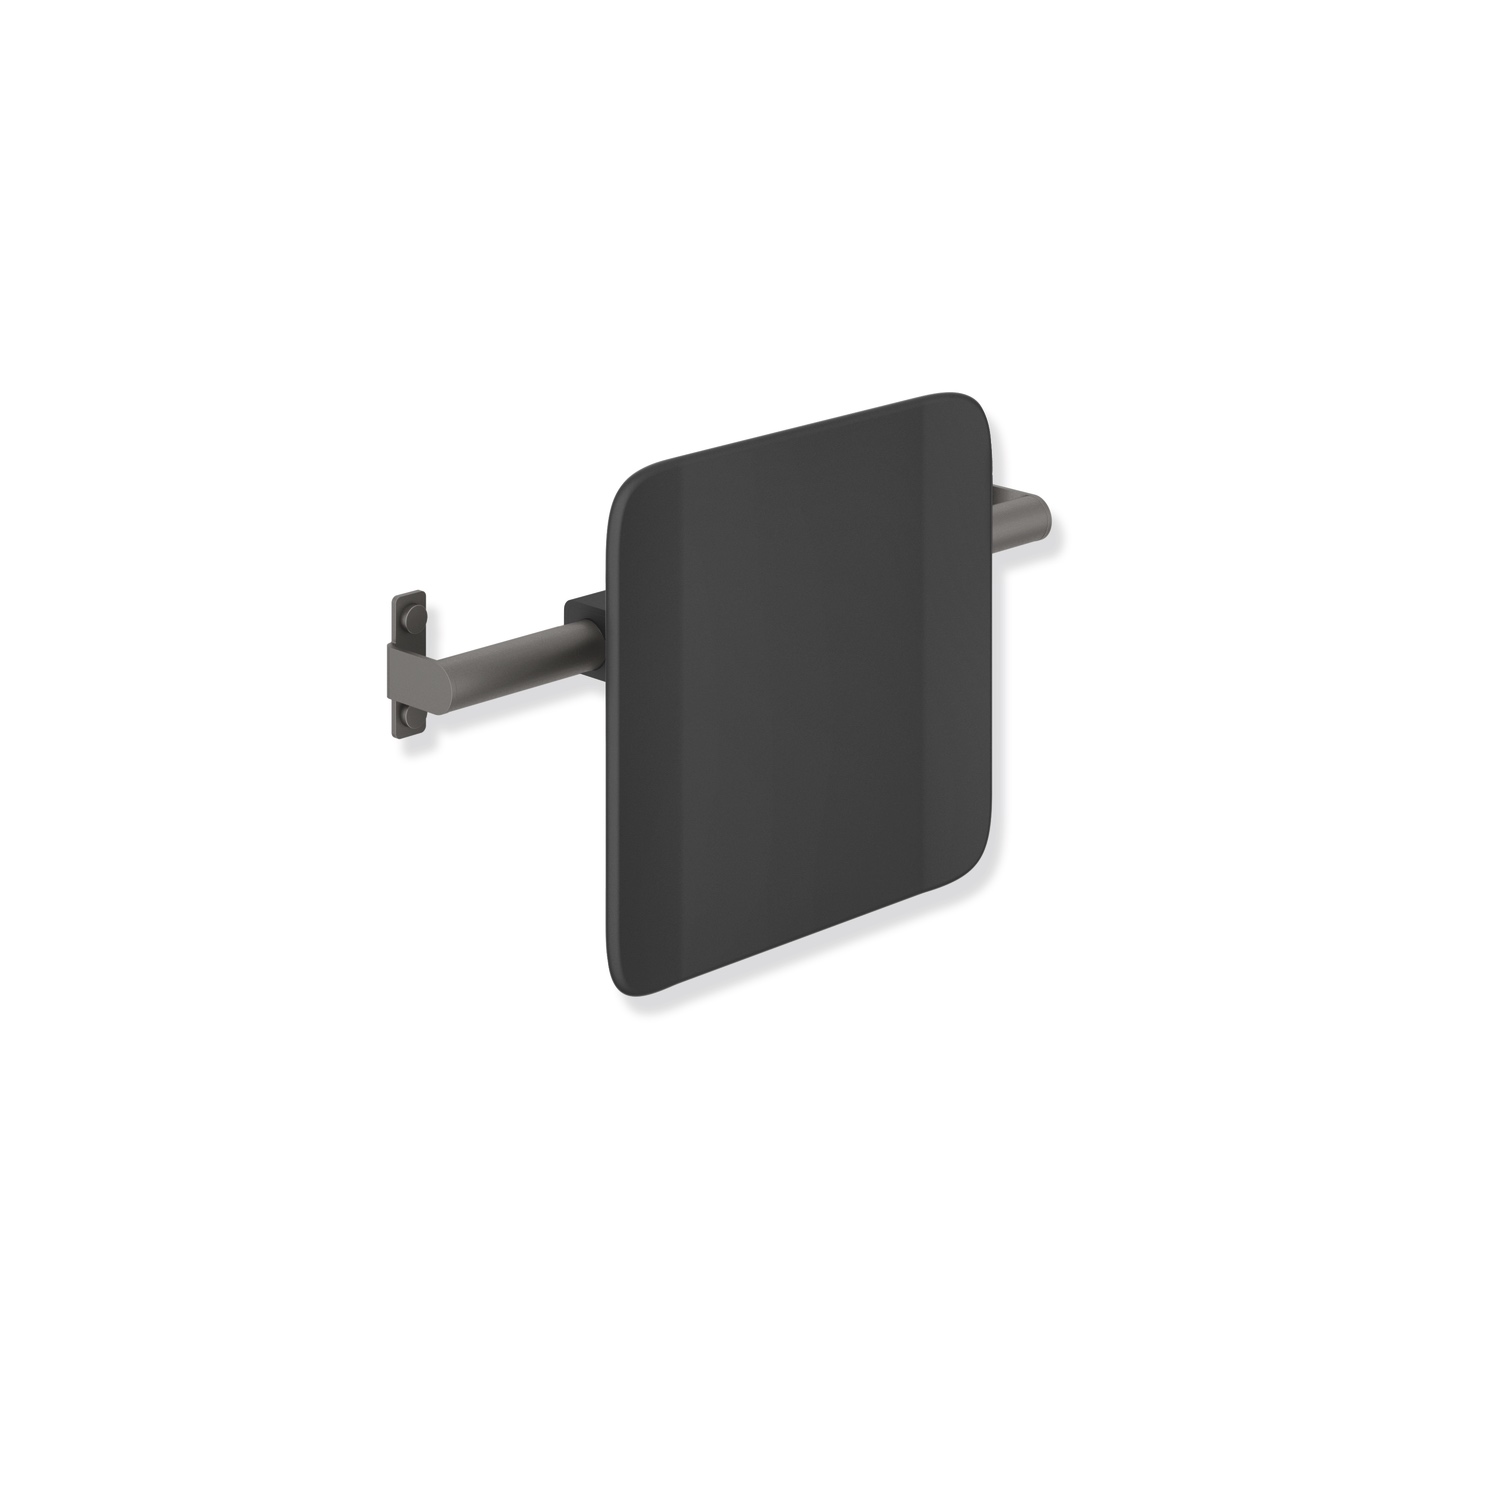 HEWI Rückenstütze „System 900“ 15 cm in schwarz tiefmatt / tiefschwarz matt